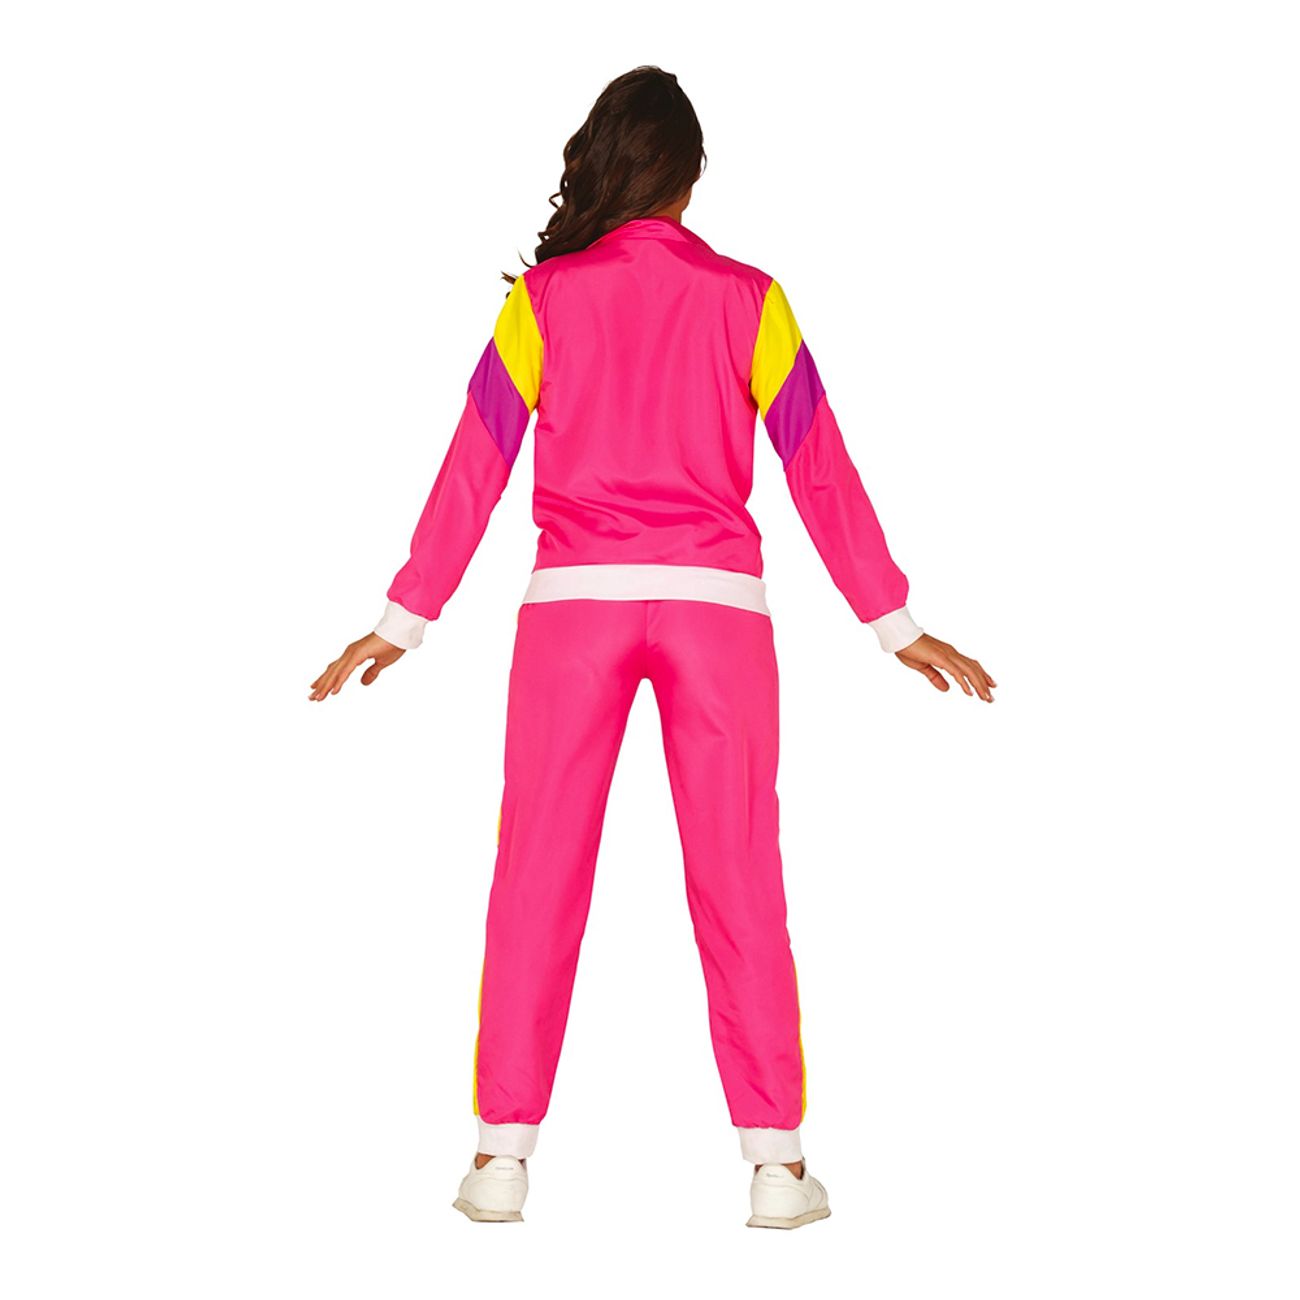 80-tals-kvinnlig-joggare-rosa-maskeraddrakt-49502-4